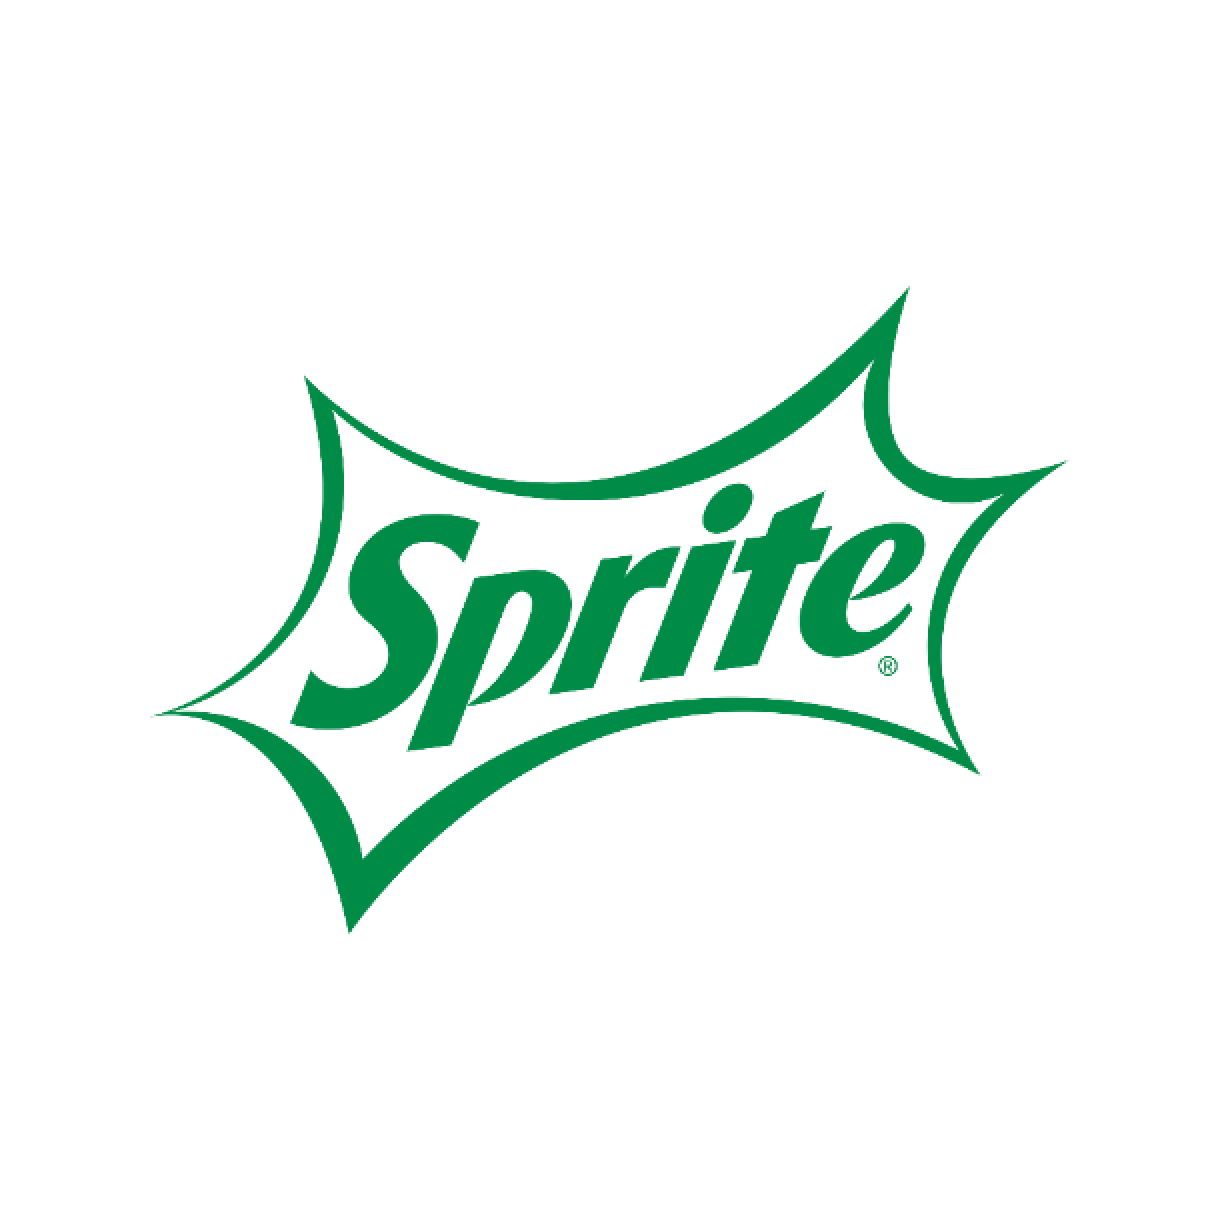 Sprite Logo